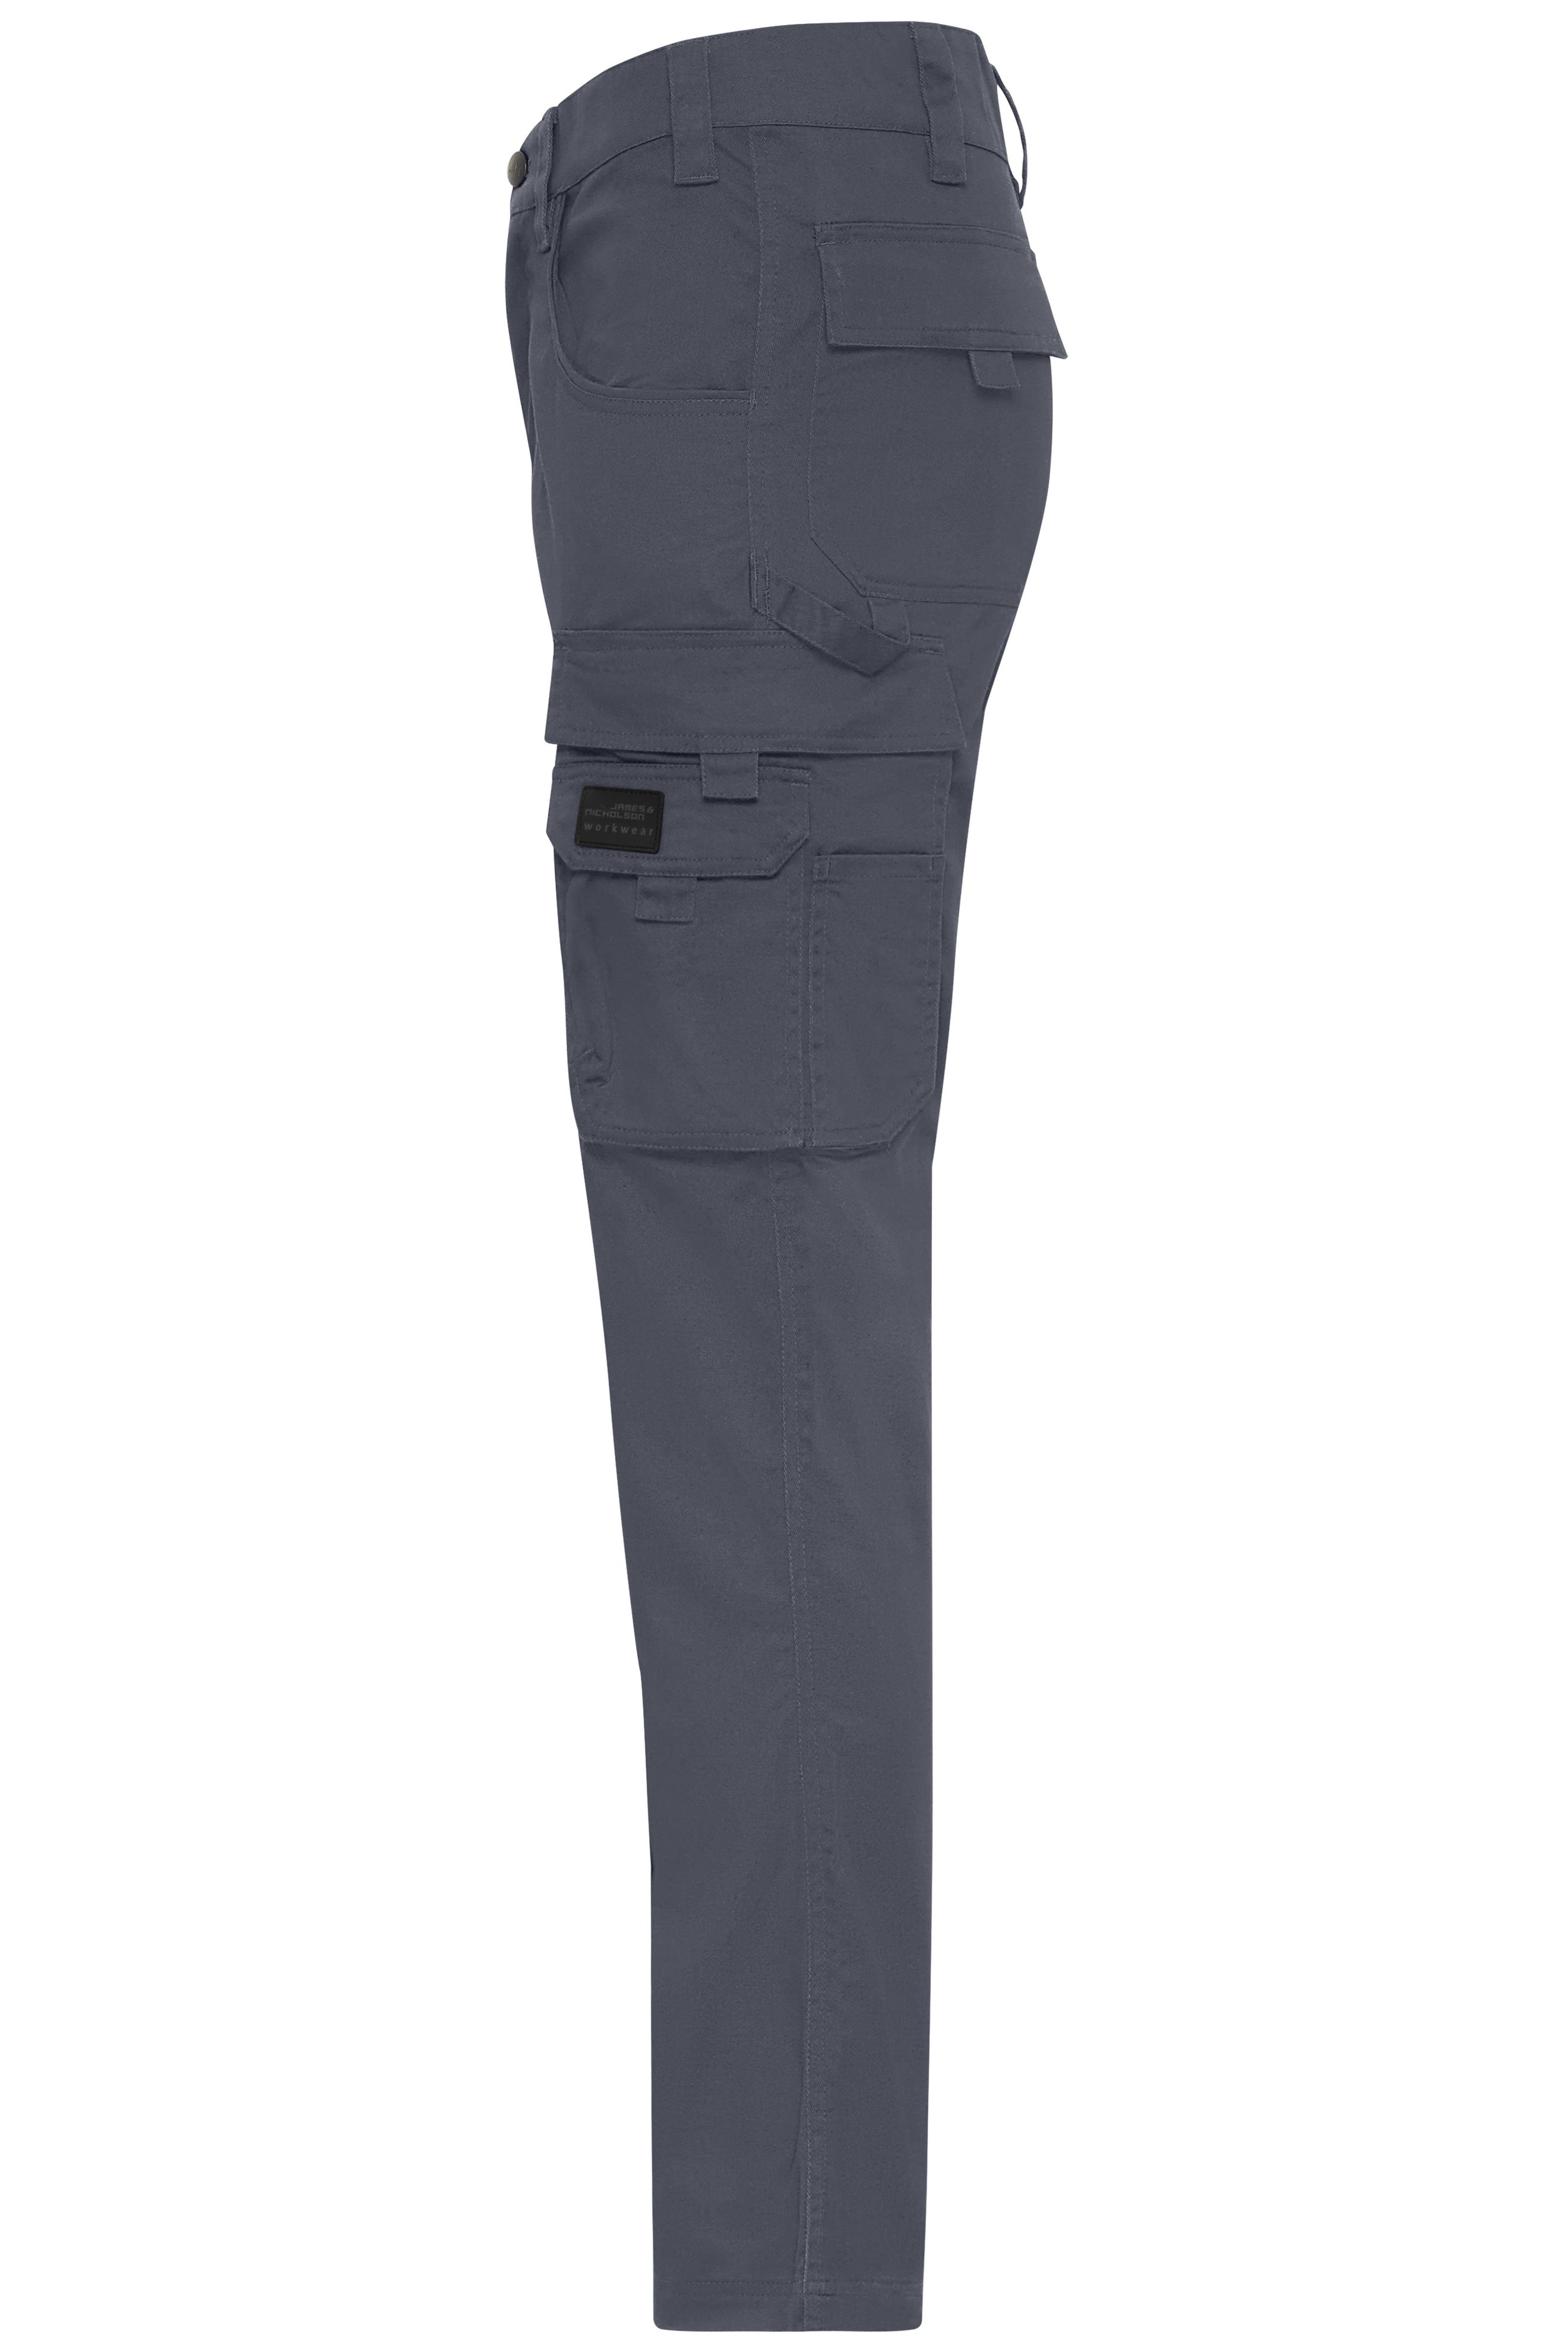 Workwear-Pants light Slim-Line JN1858 Leichte, robuste Arbeitshose in schmaler Schnittführung mit funktionellen Details